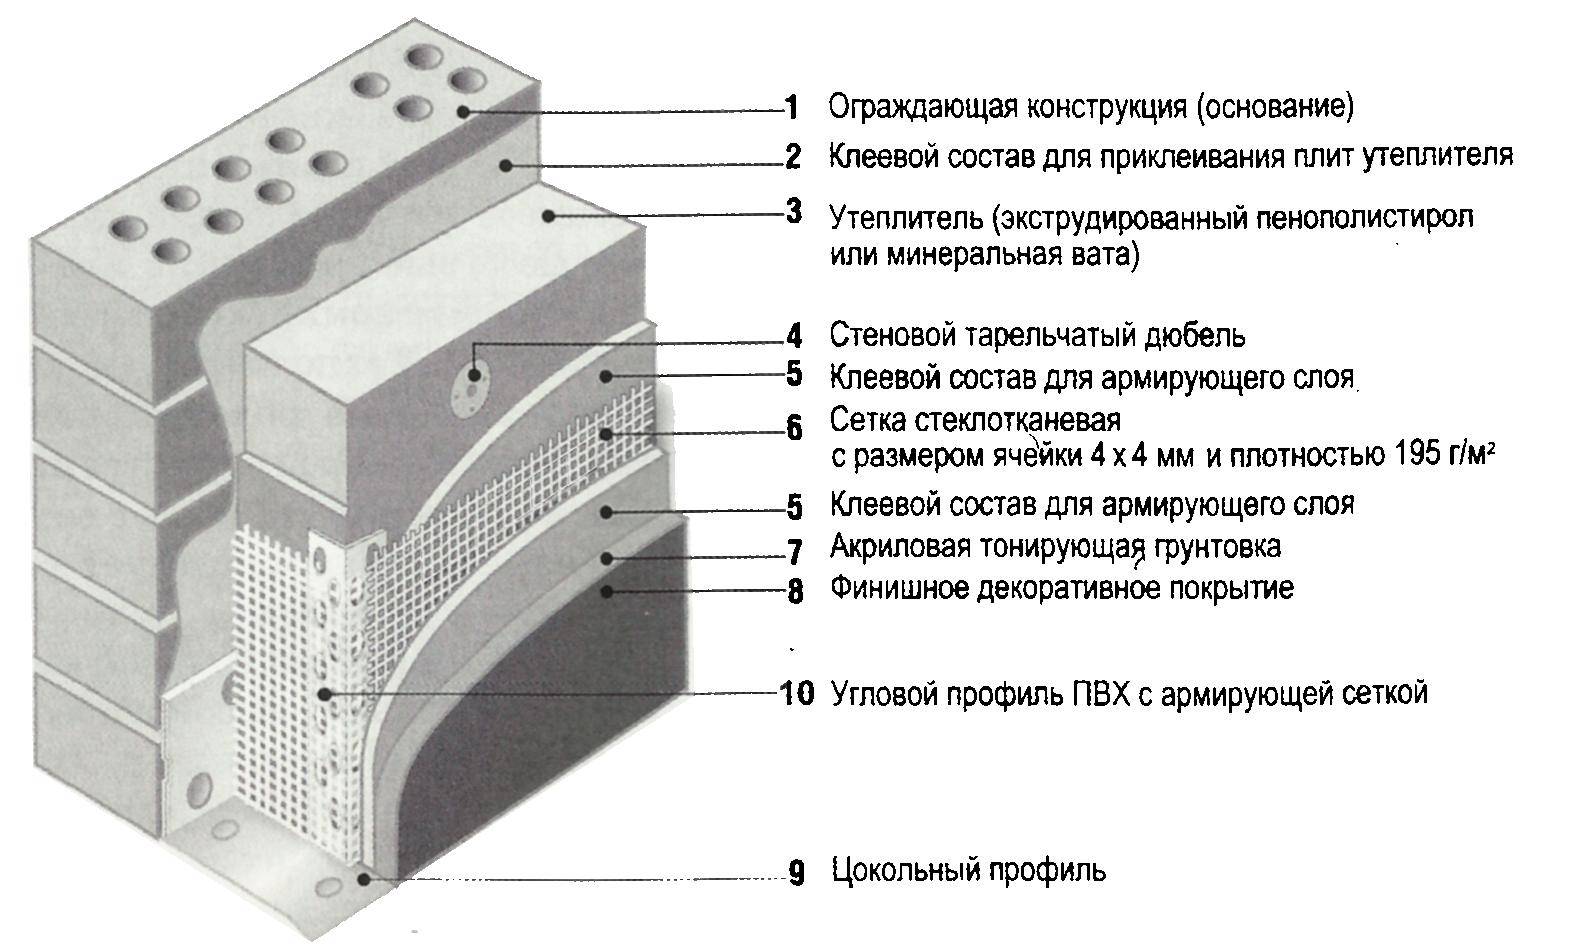 Штукатурка для фасада по пенопласту: этапы отделки